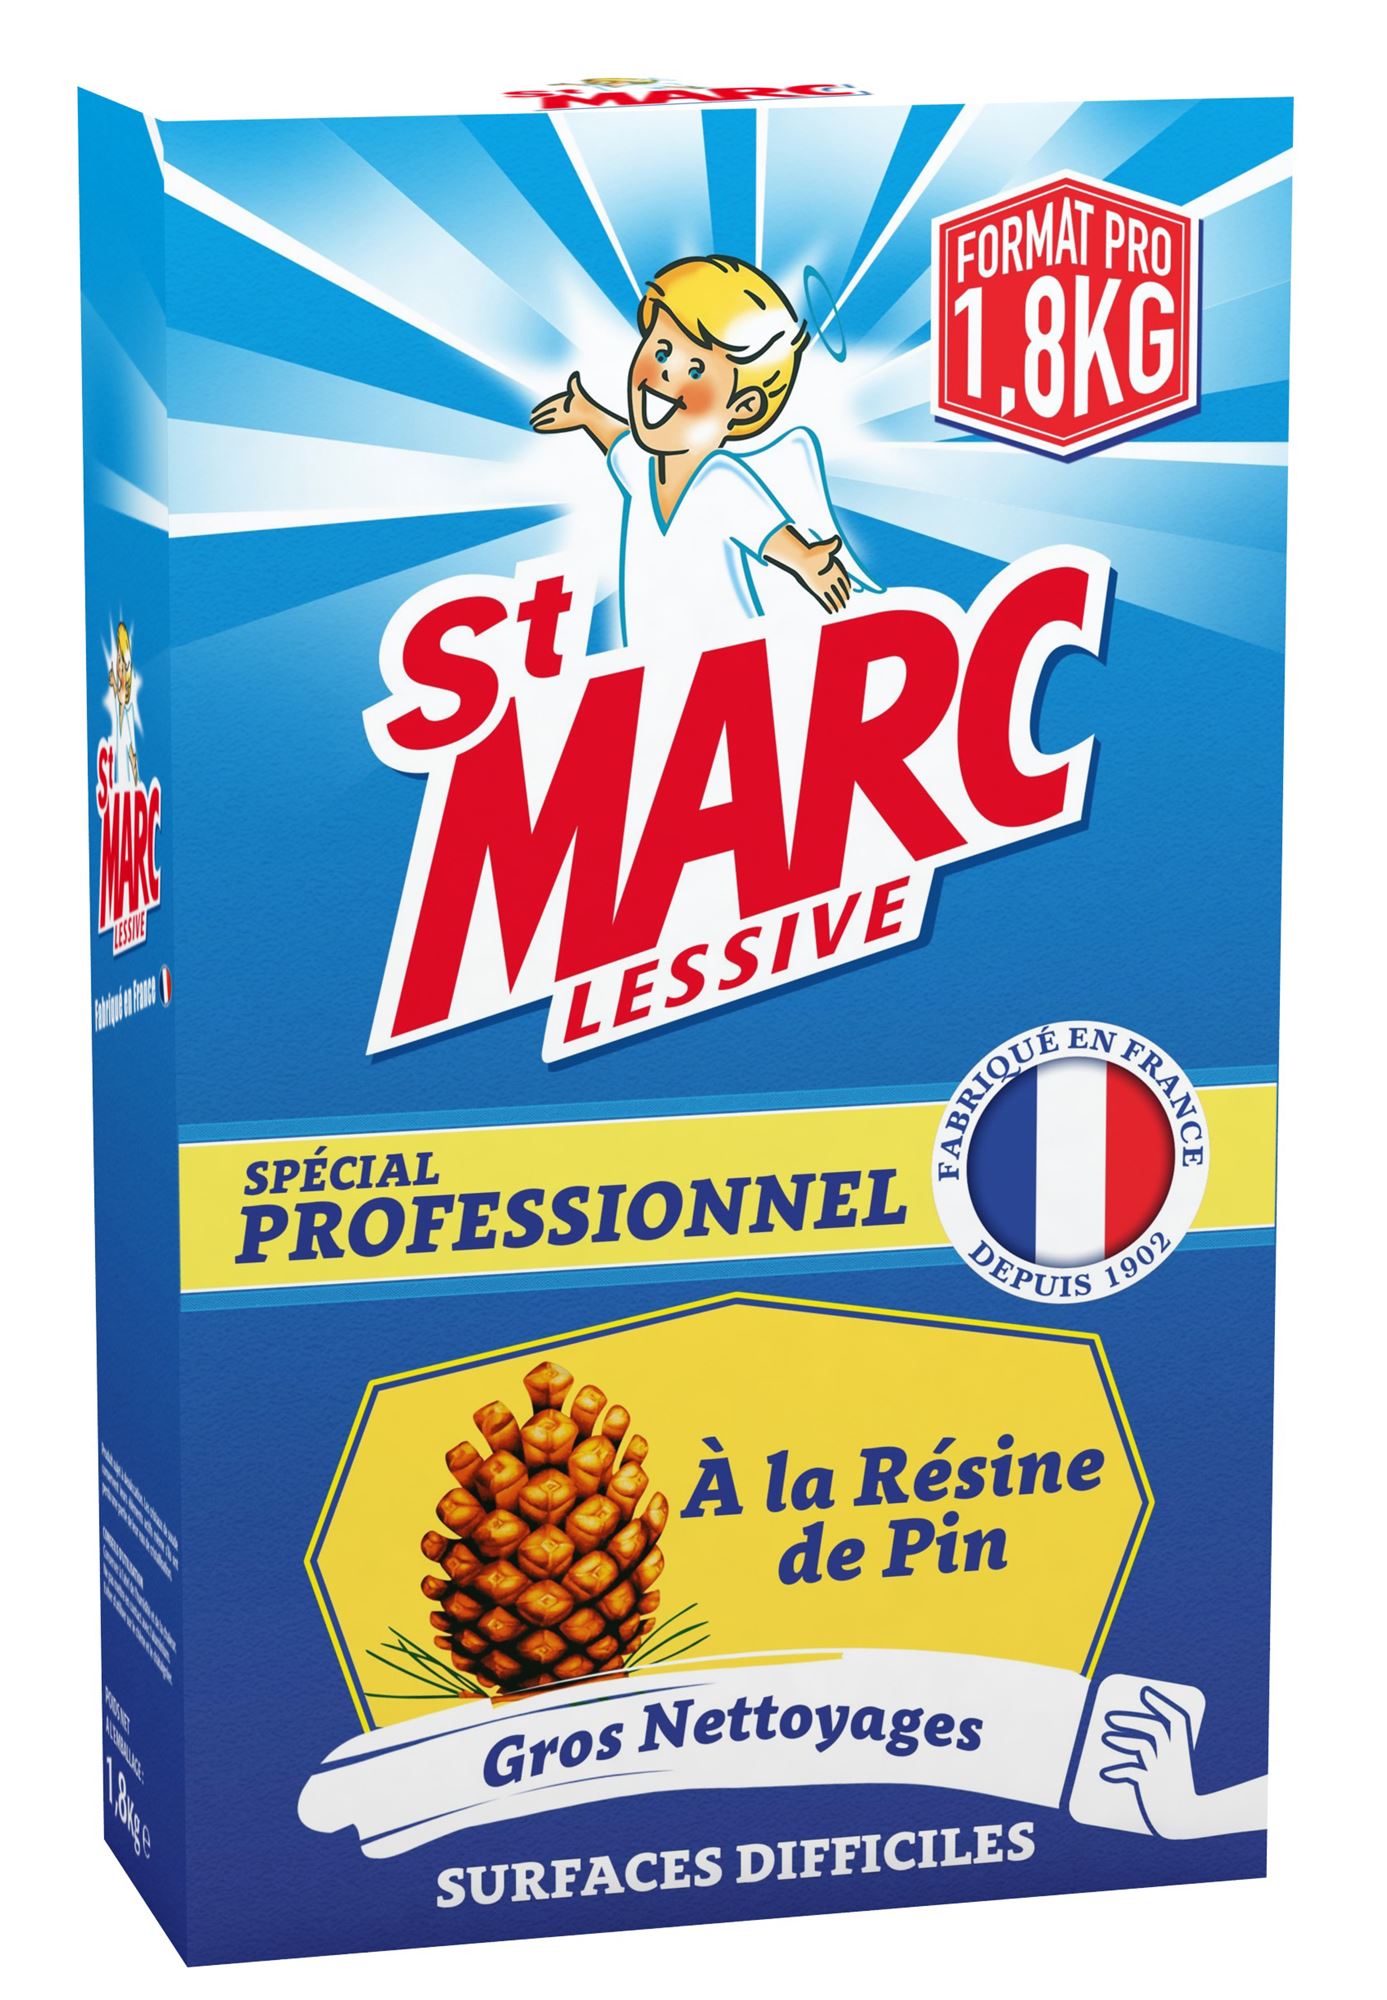 Lessive St Marc Professionnel